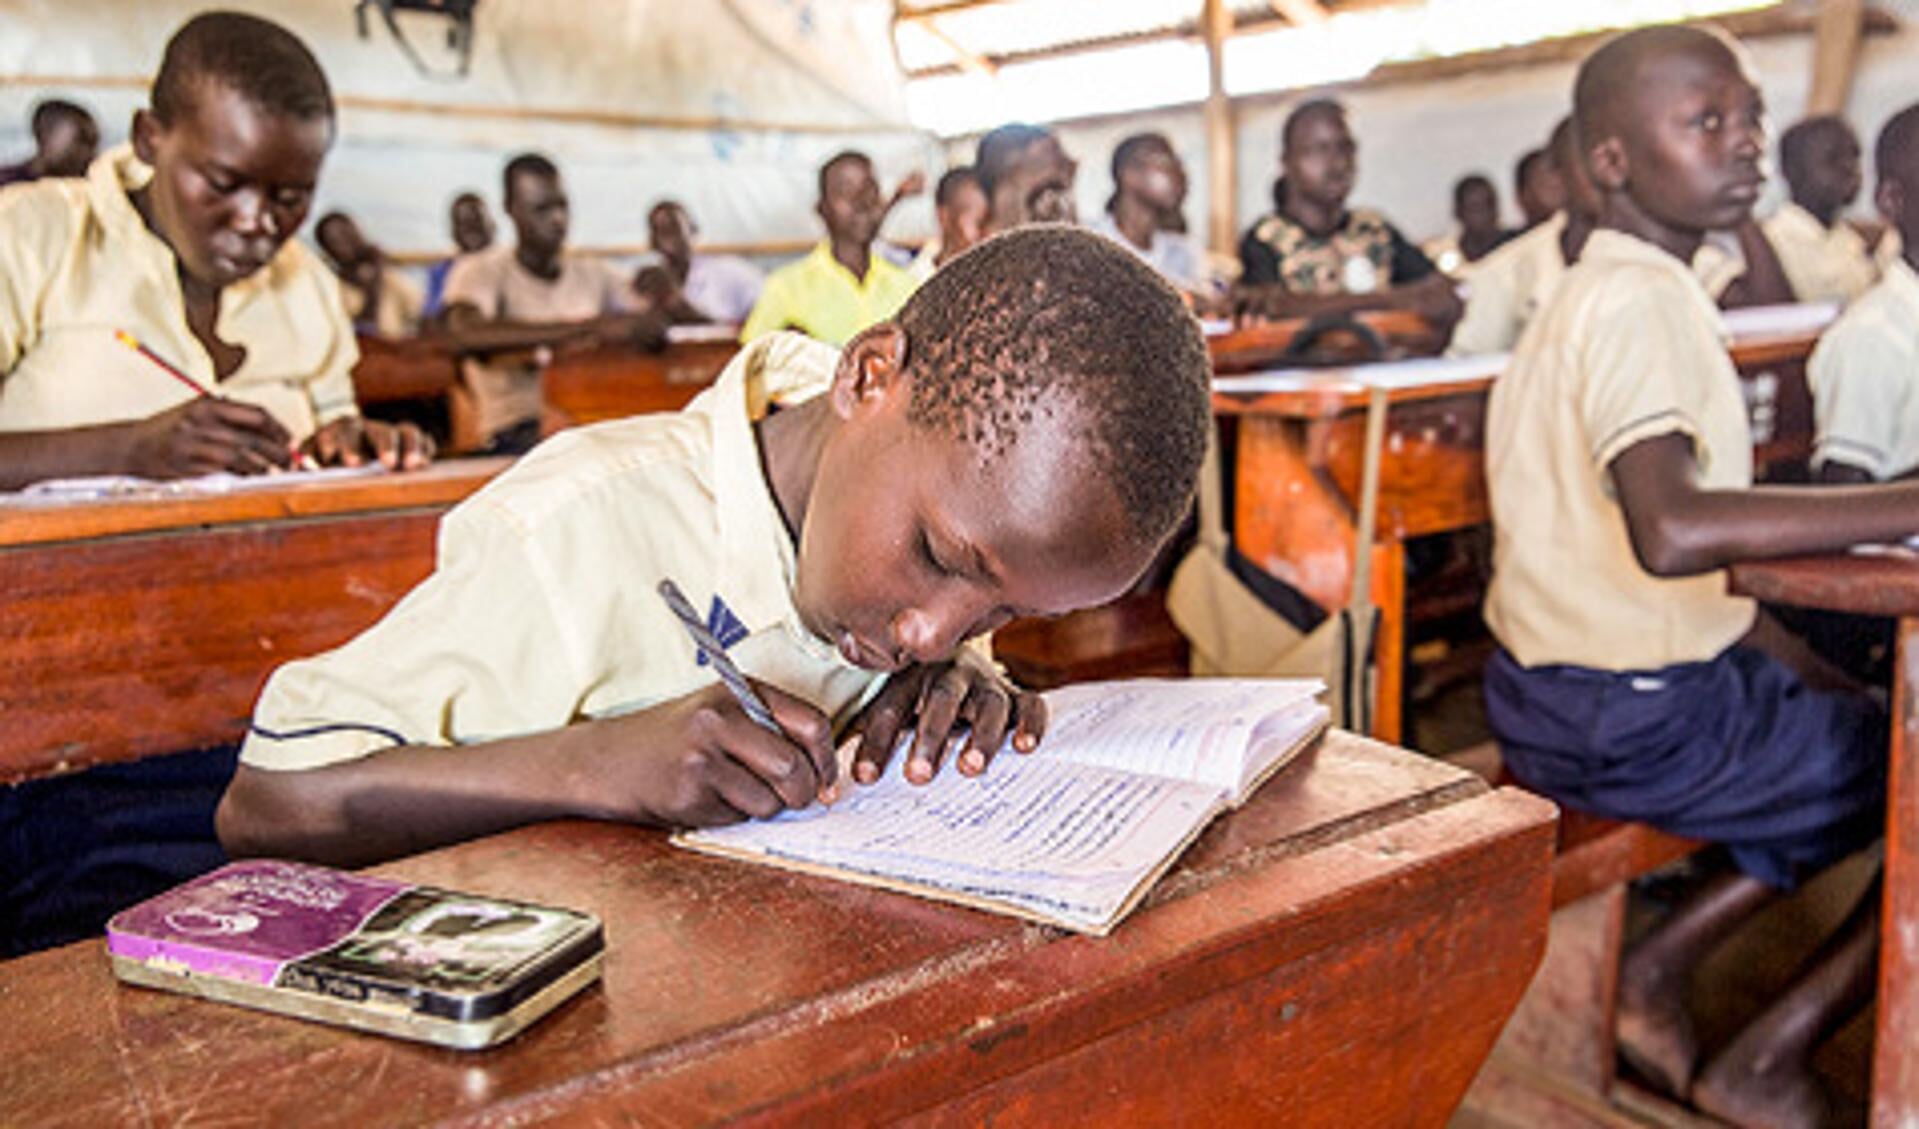 Schoolklas in Oeganda